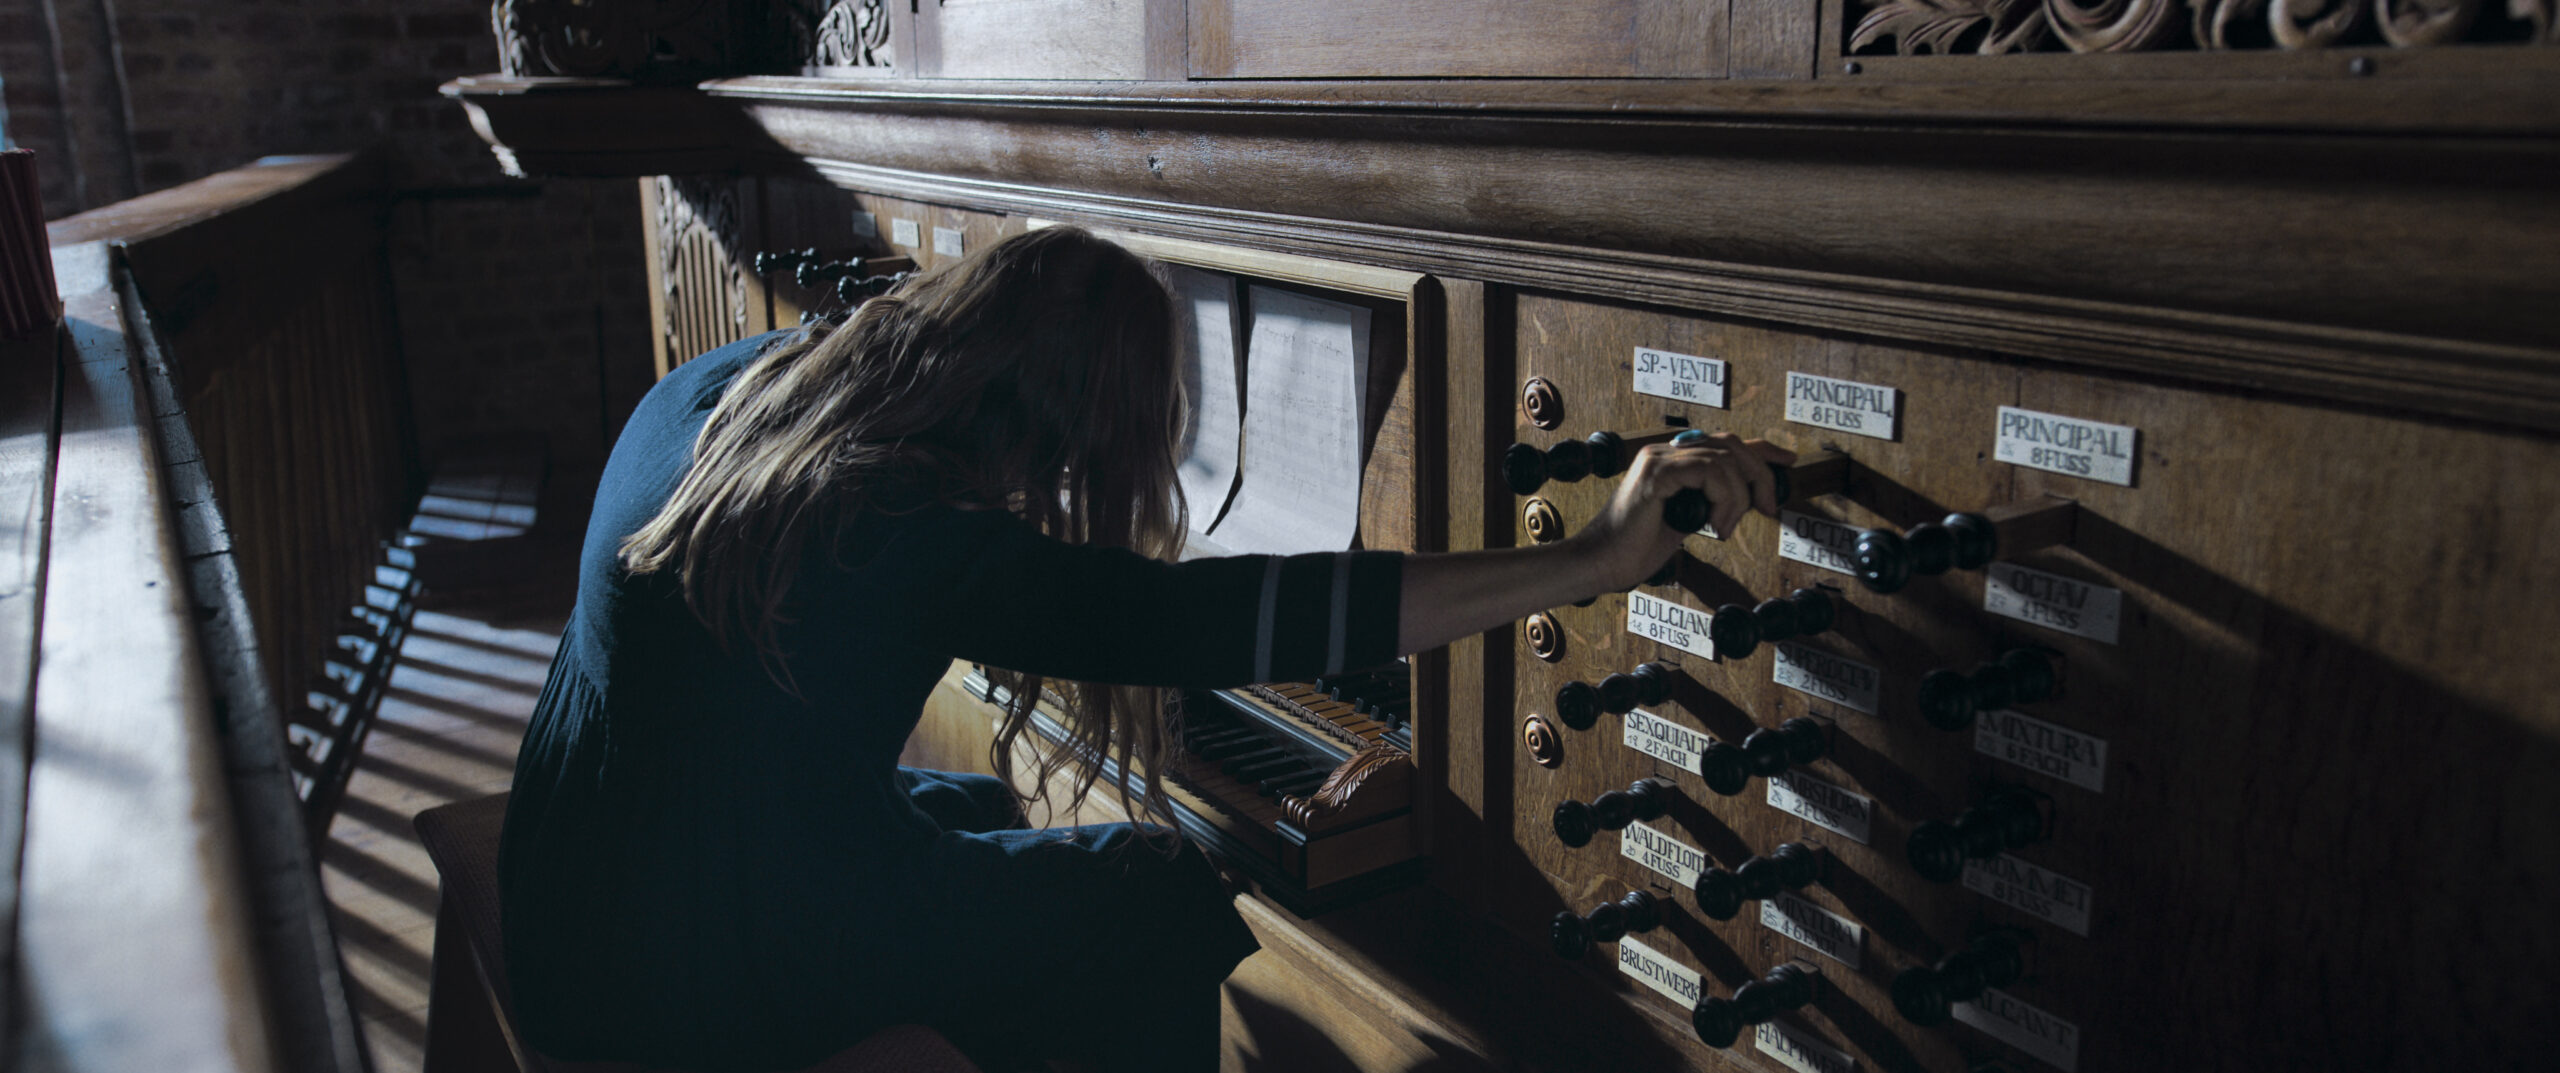 De organiste Birgit Wildeman komt uit Münster maar werkt echter op een Duits waddeneiland